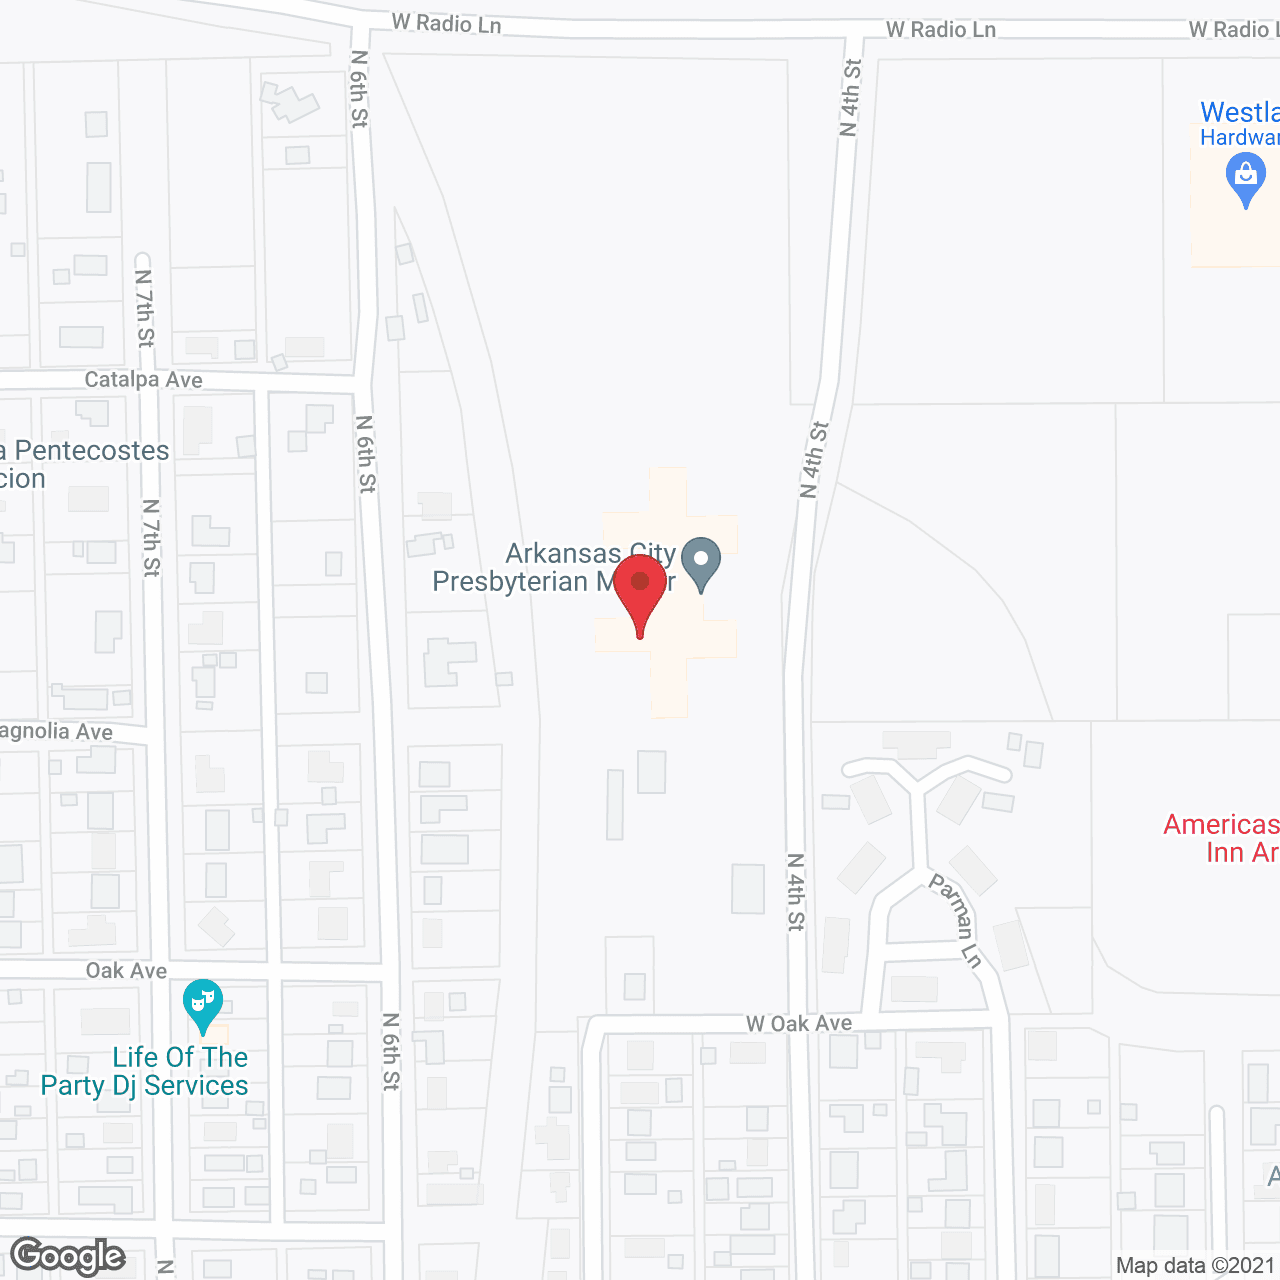 Arkansas City Presbyterian Manor in google map